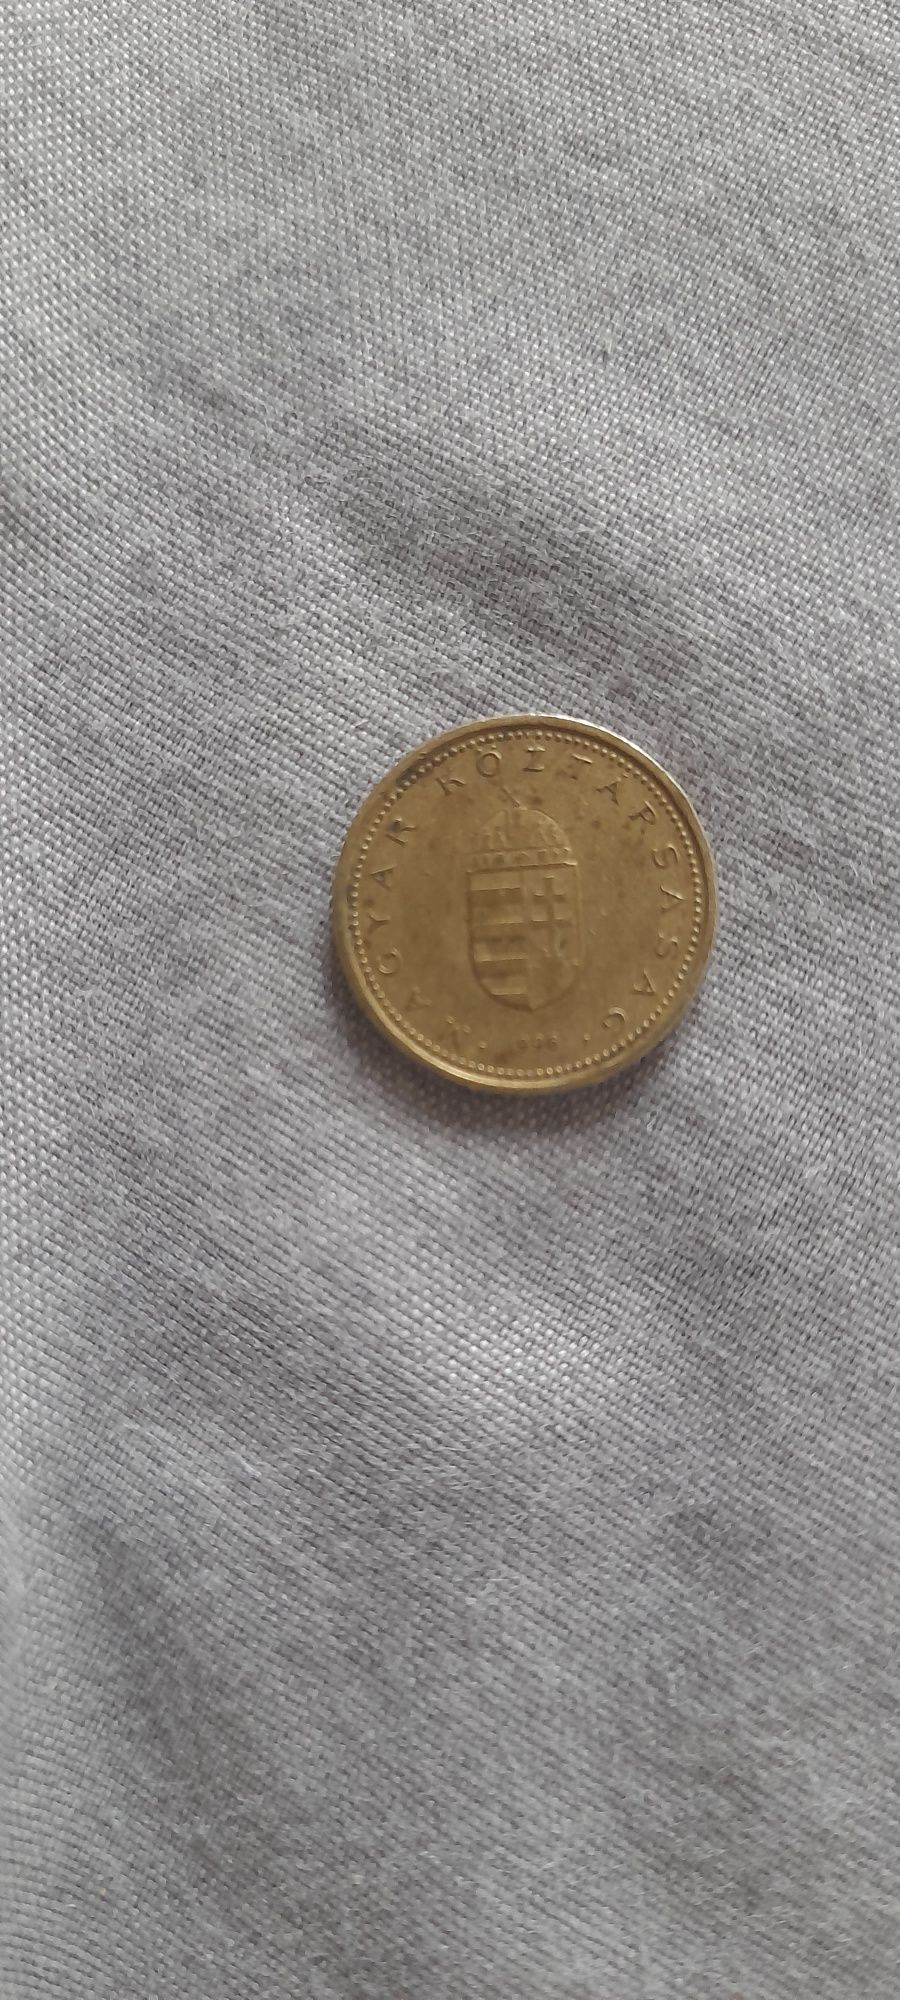 Продам монету 1 венгерский форинт 1996 года